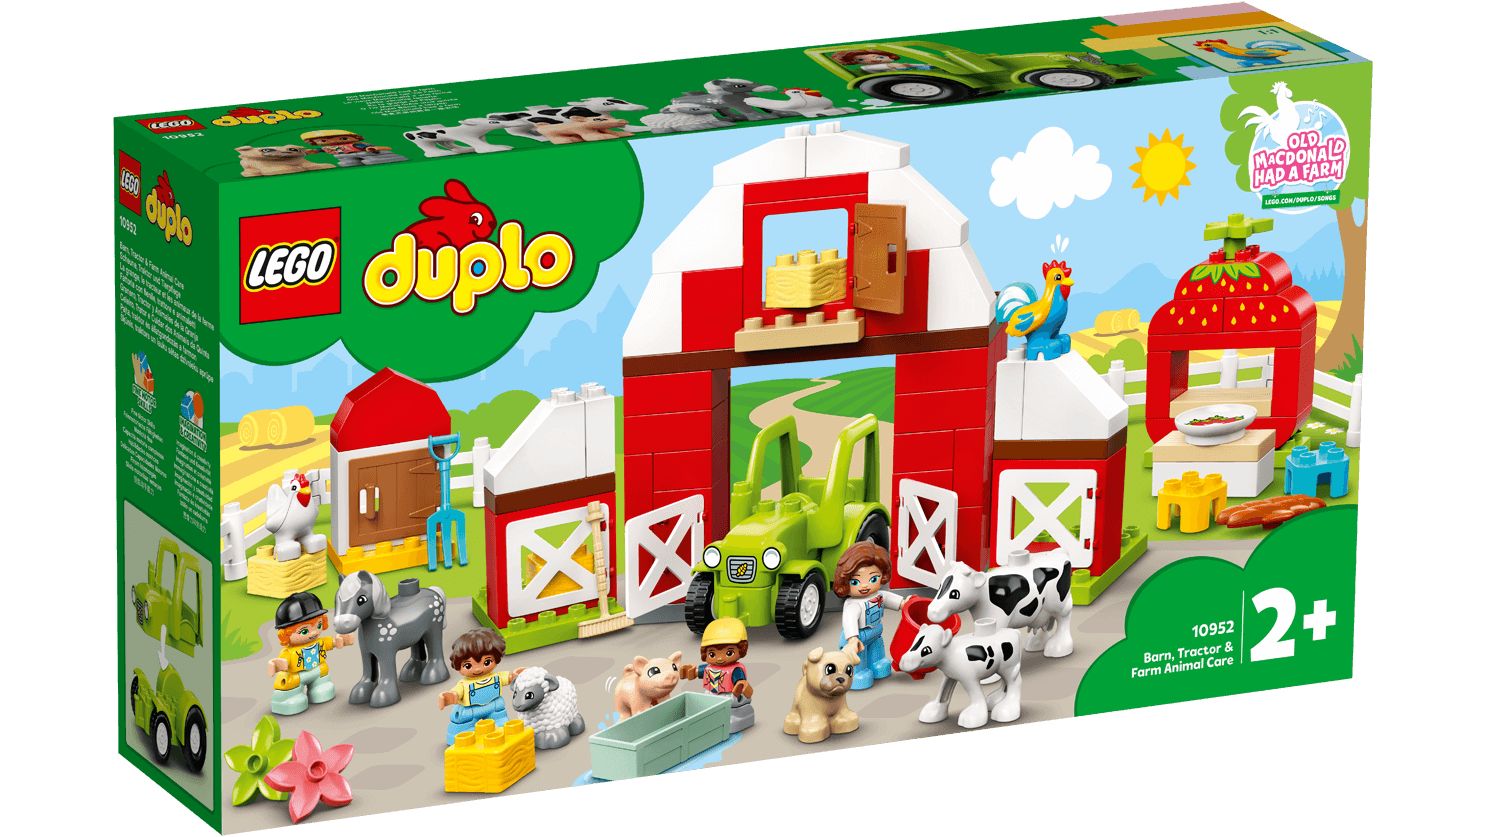 LEGO Duplo 10952 Scheune, Traktor und Tierpflege LEGO_10952_Box1_v29_1488.jpg